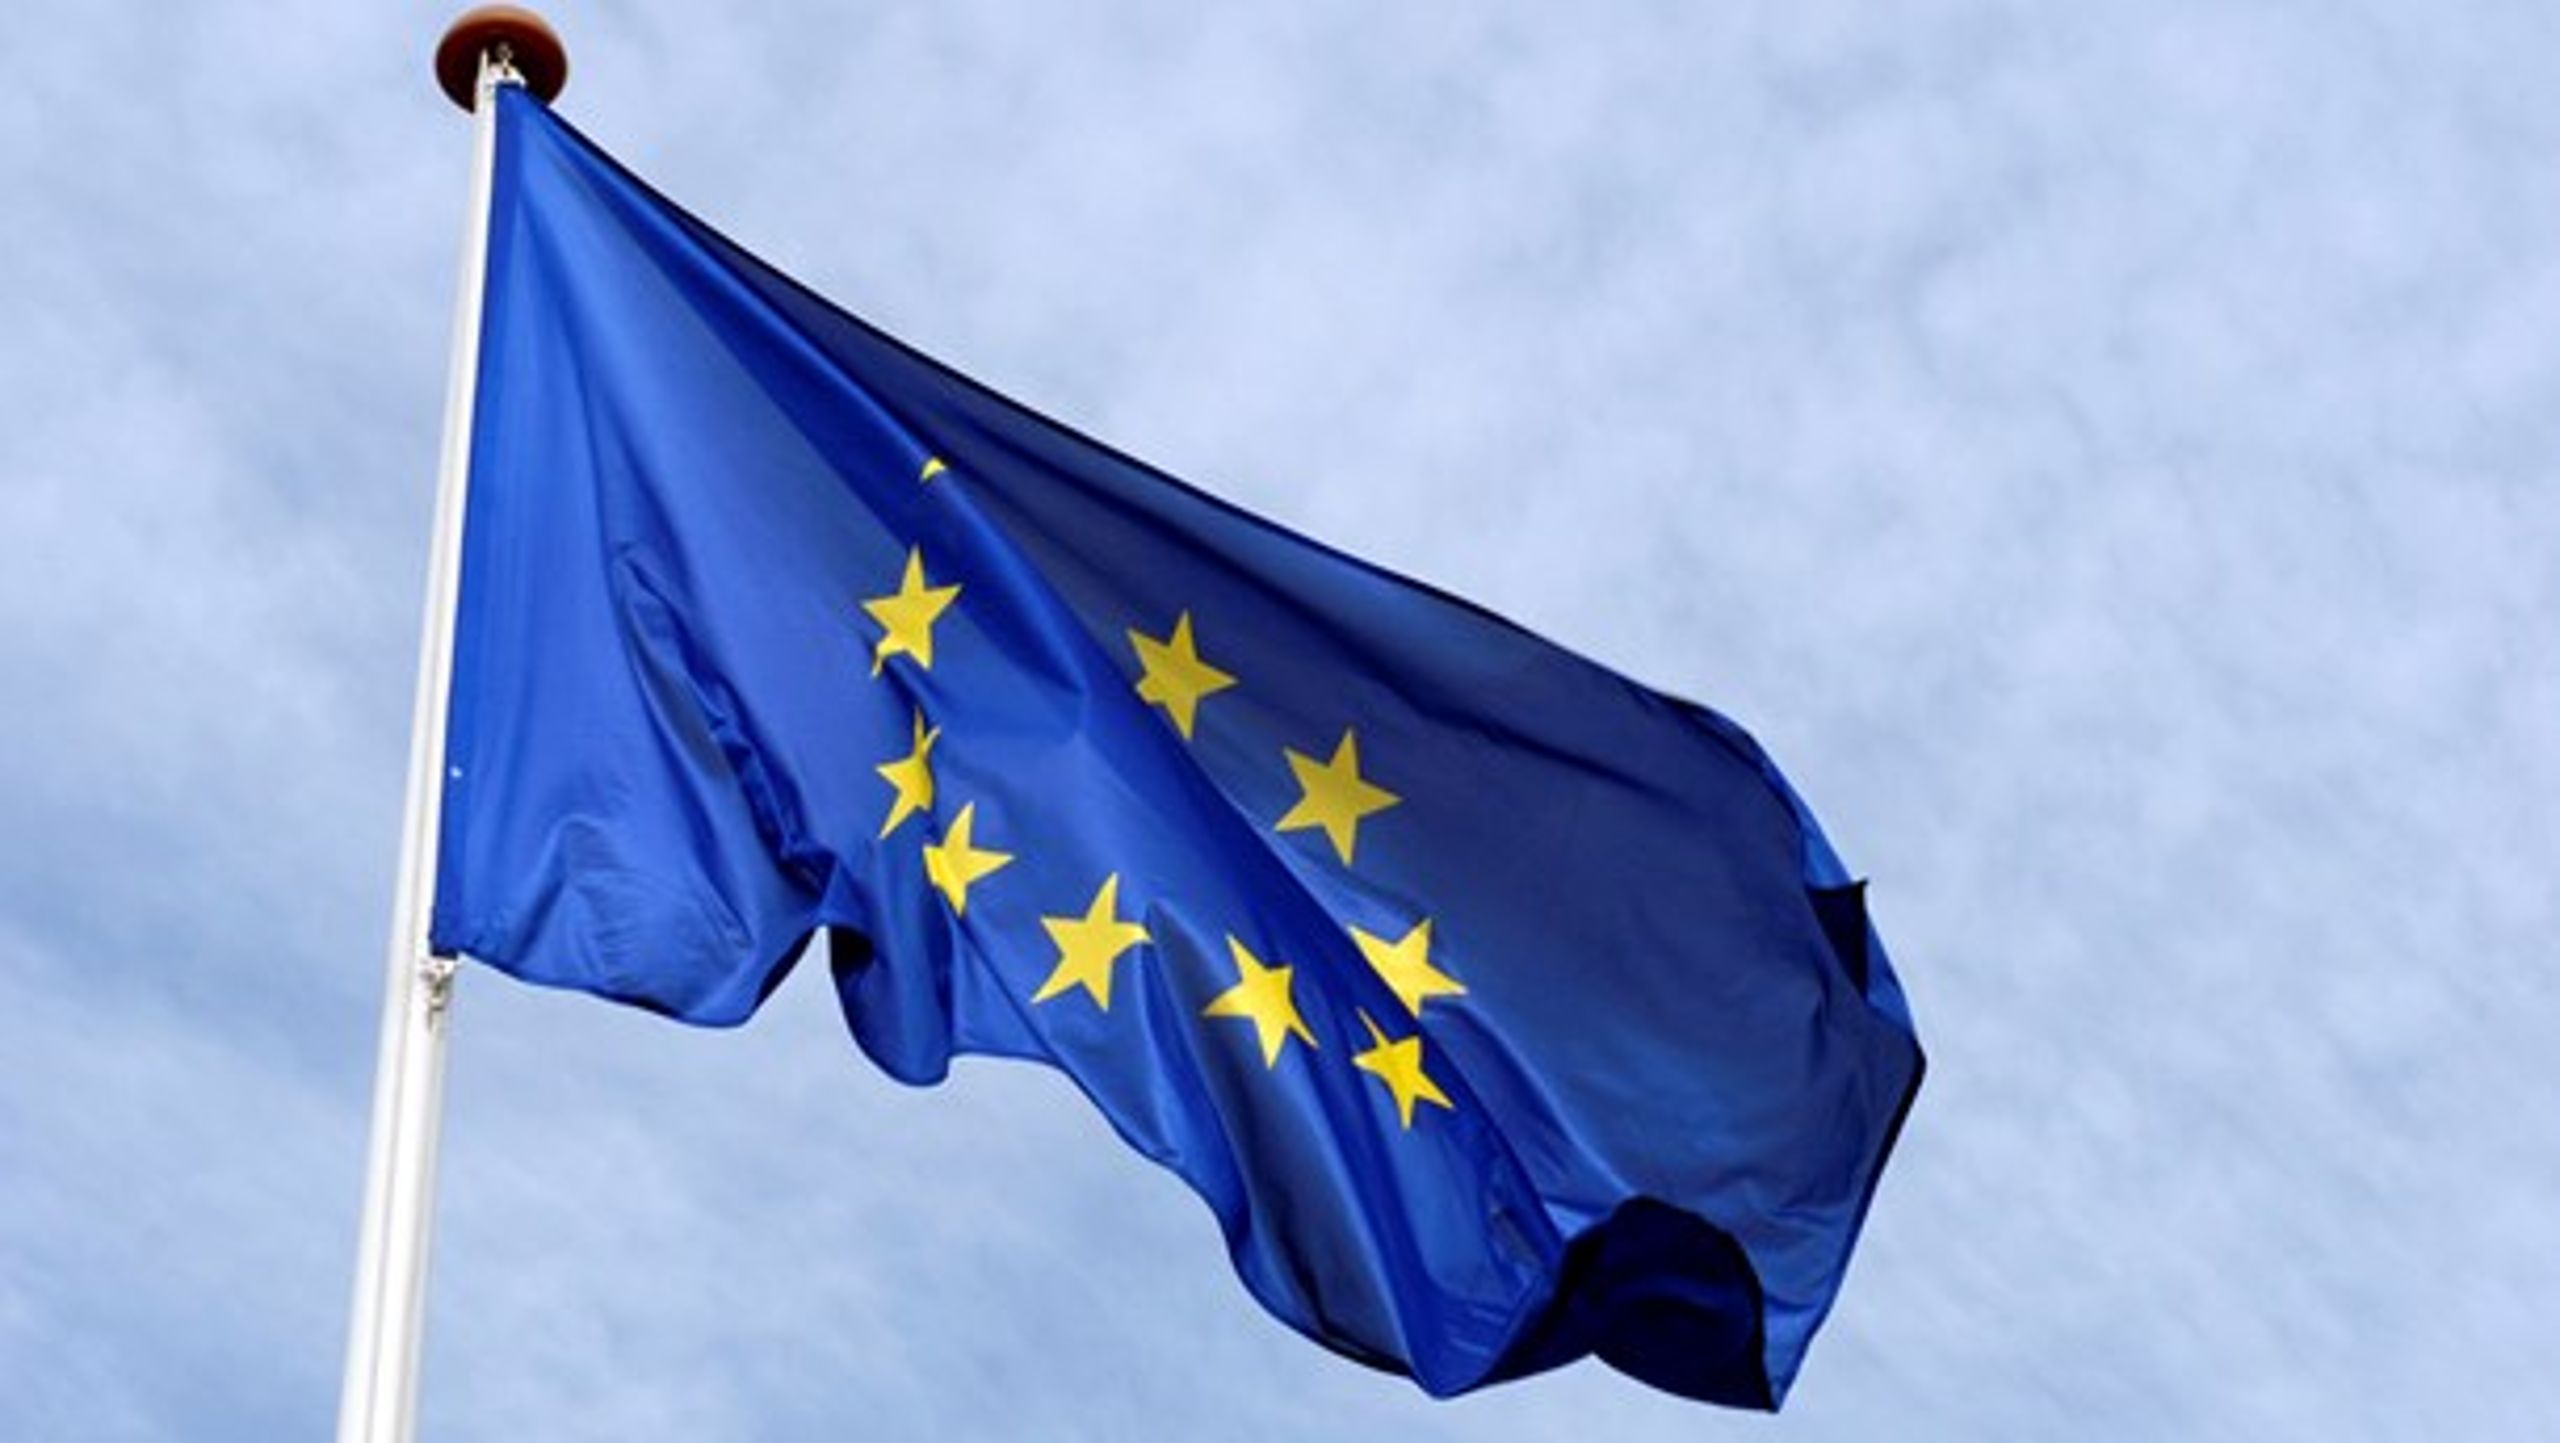 Skal EU's frie bevægelighed under øget politisk kontrol?